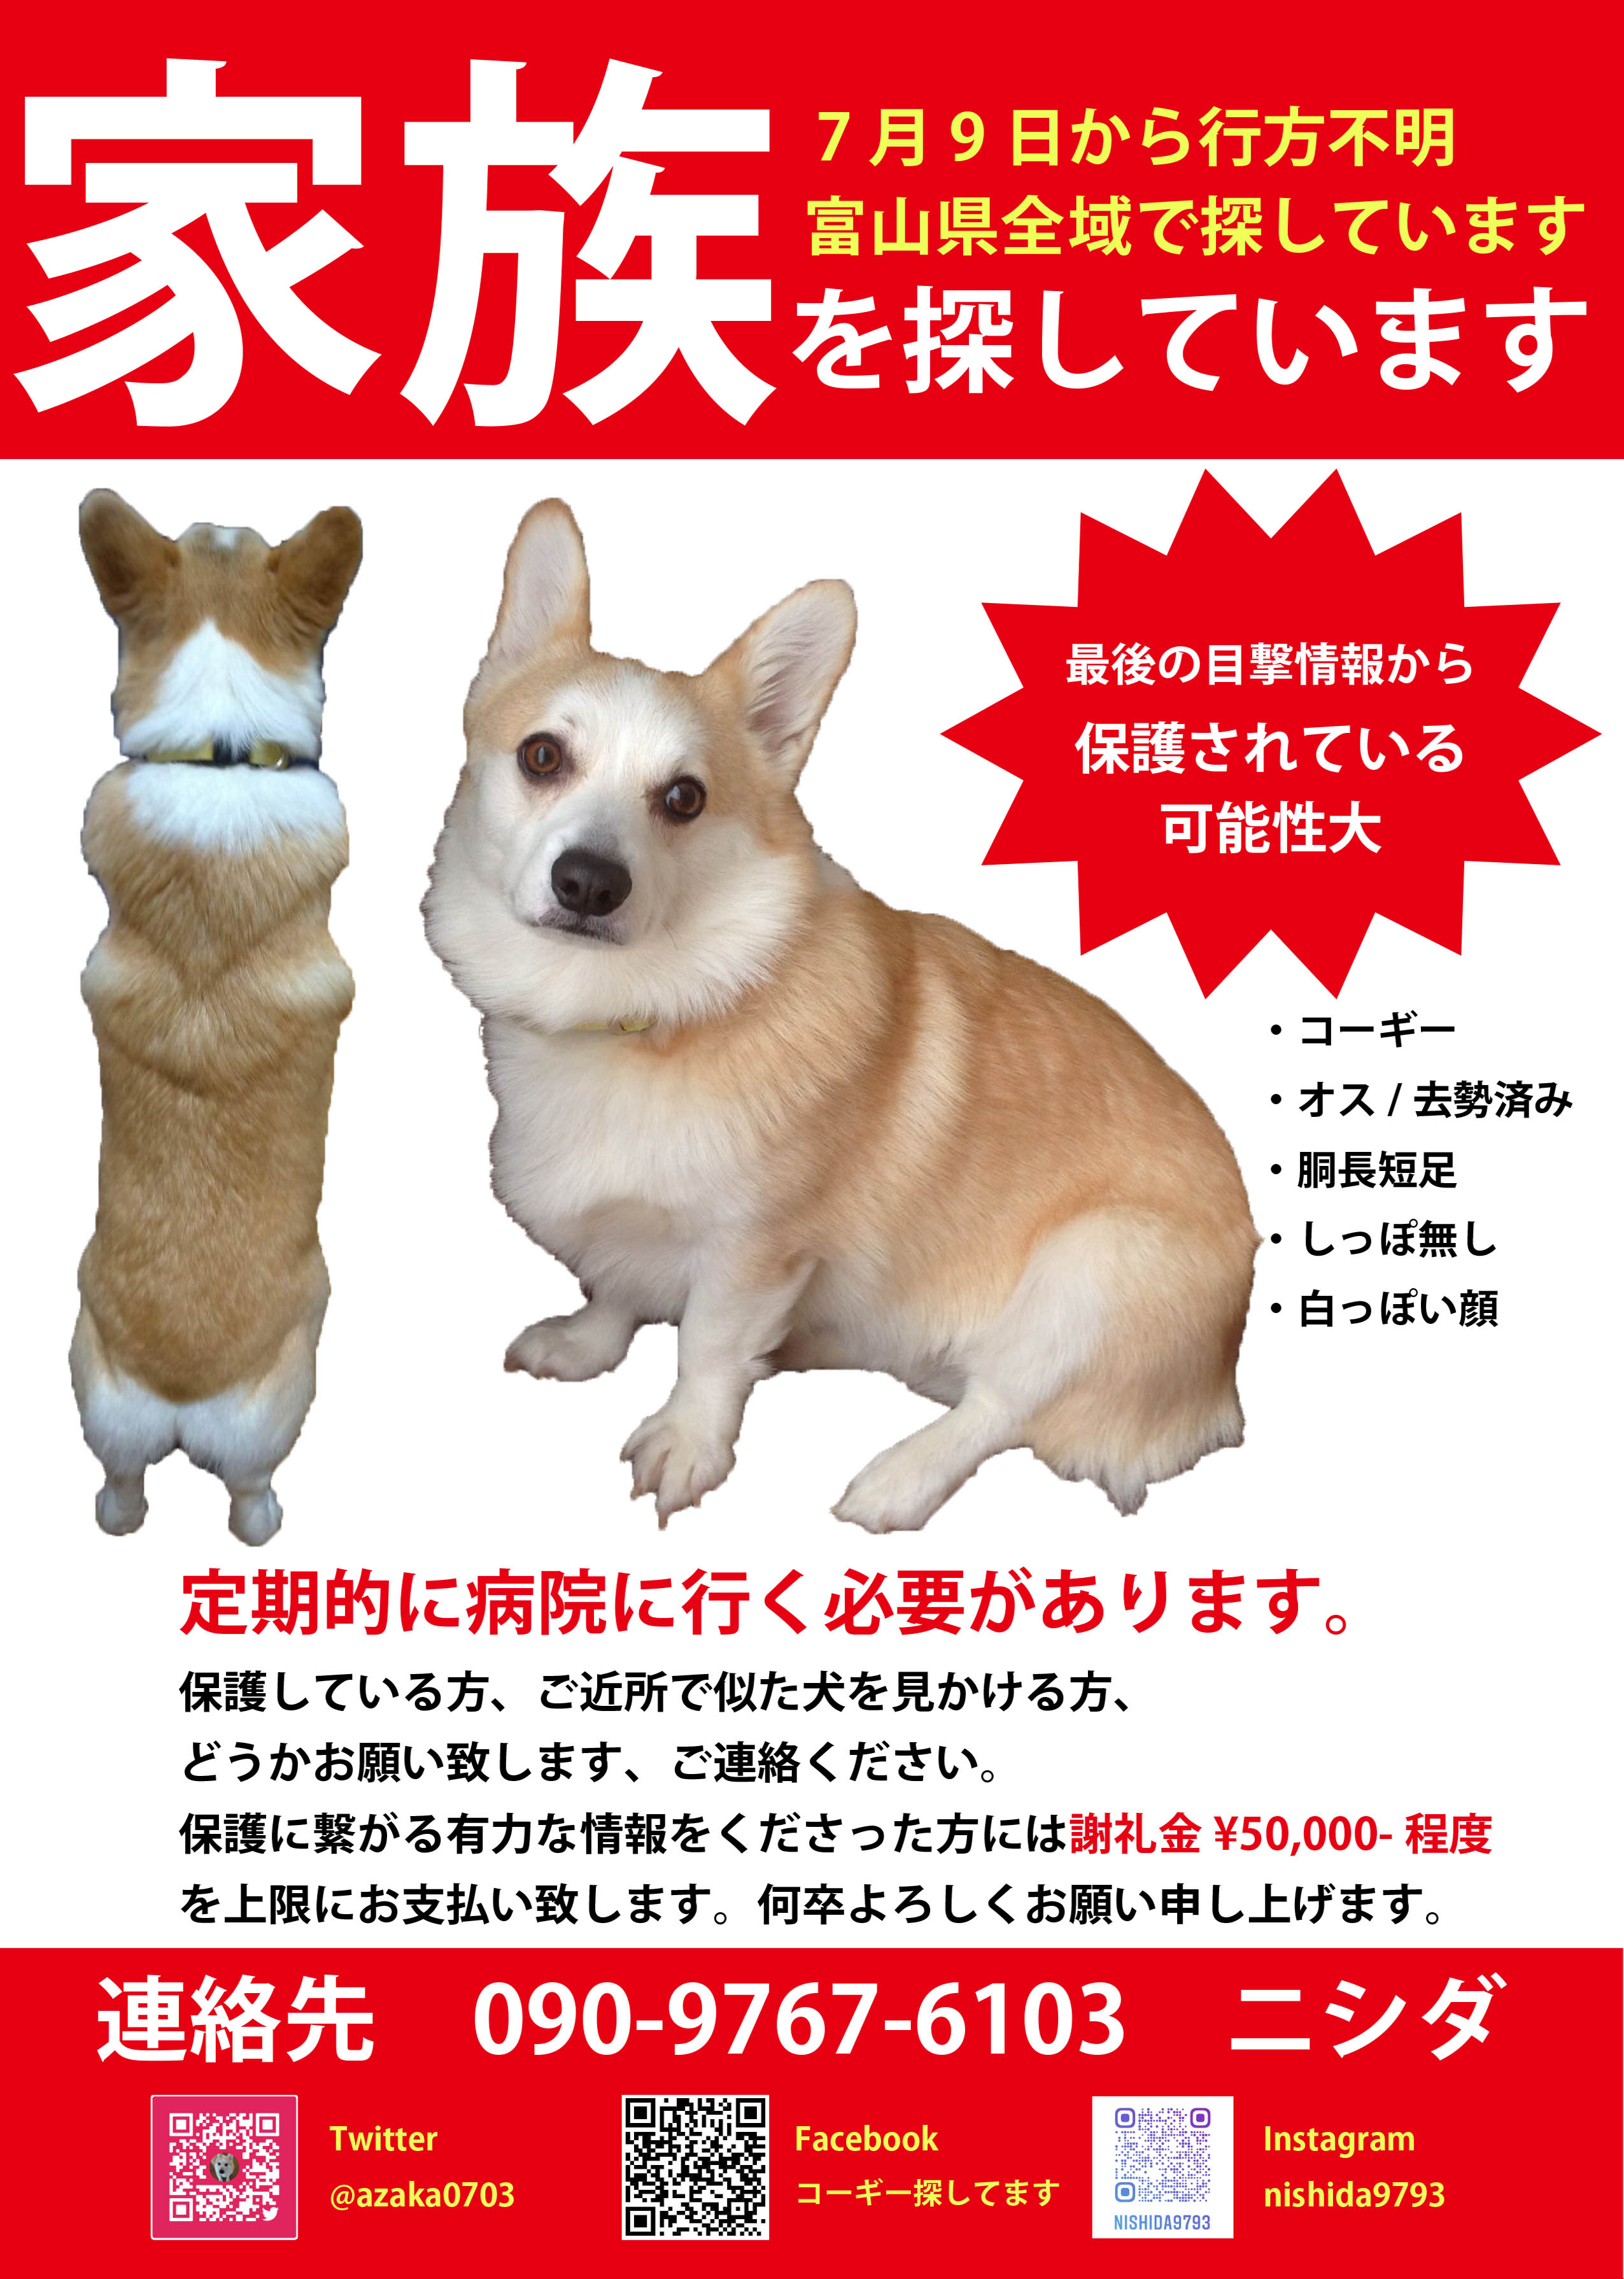 コーギー探してます 富山県 行方不明になって今日で一年と一か月 どんなに些細な情報でも構いません 画像に似た犬をお見掛けしましたらご連絡ください 保護され飼われている可能性が高いです どうか ご協力をお願い申し上げます 迷い犬 富山